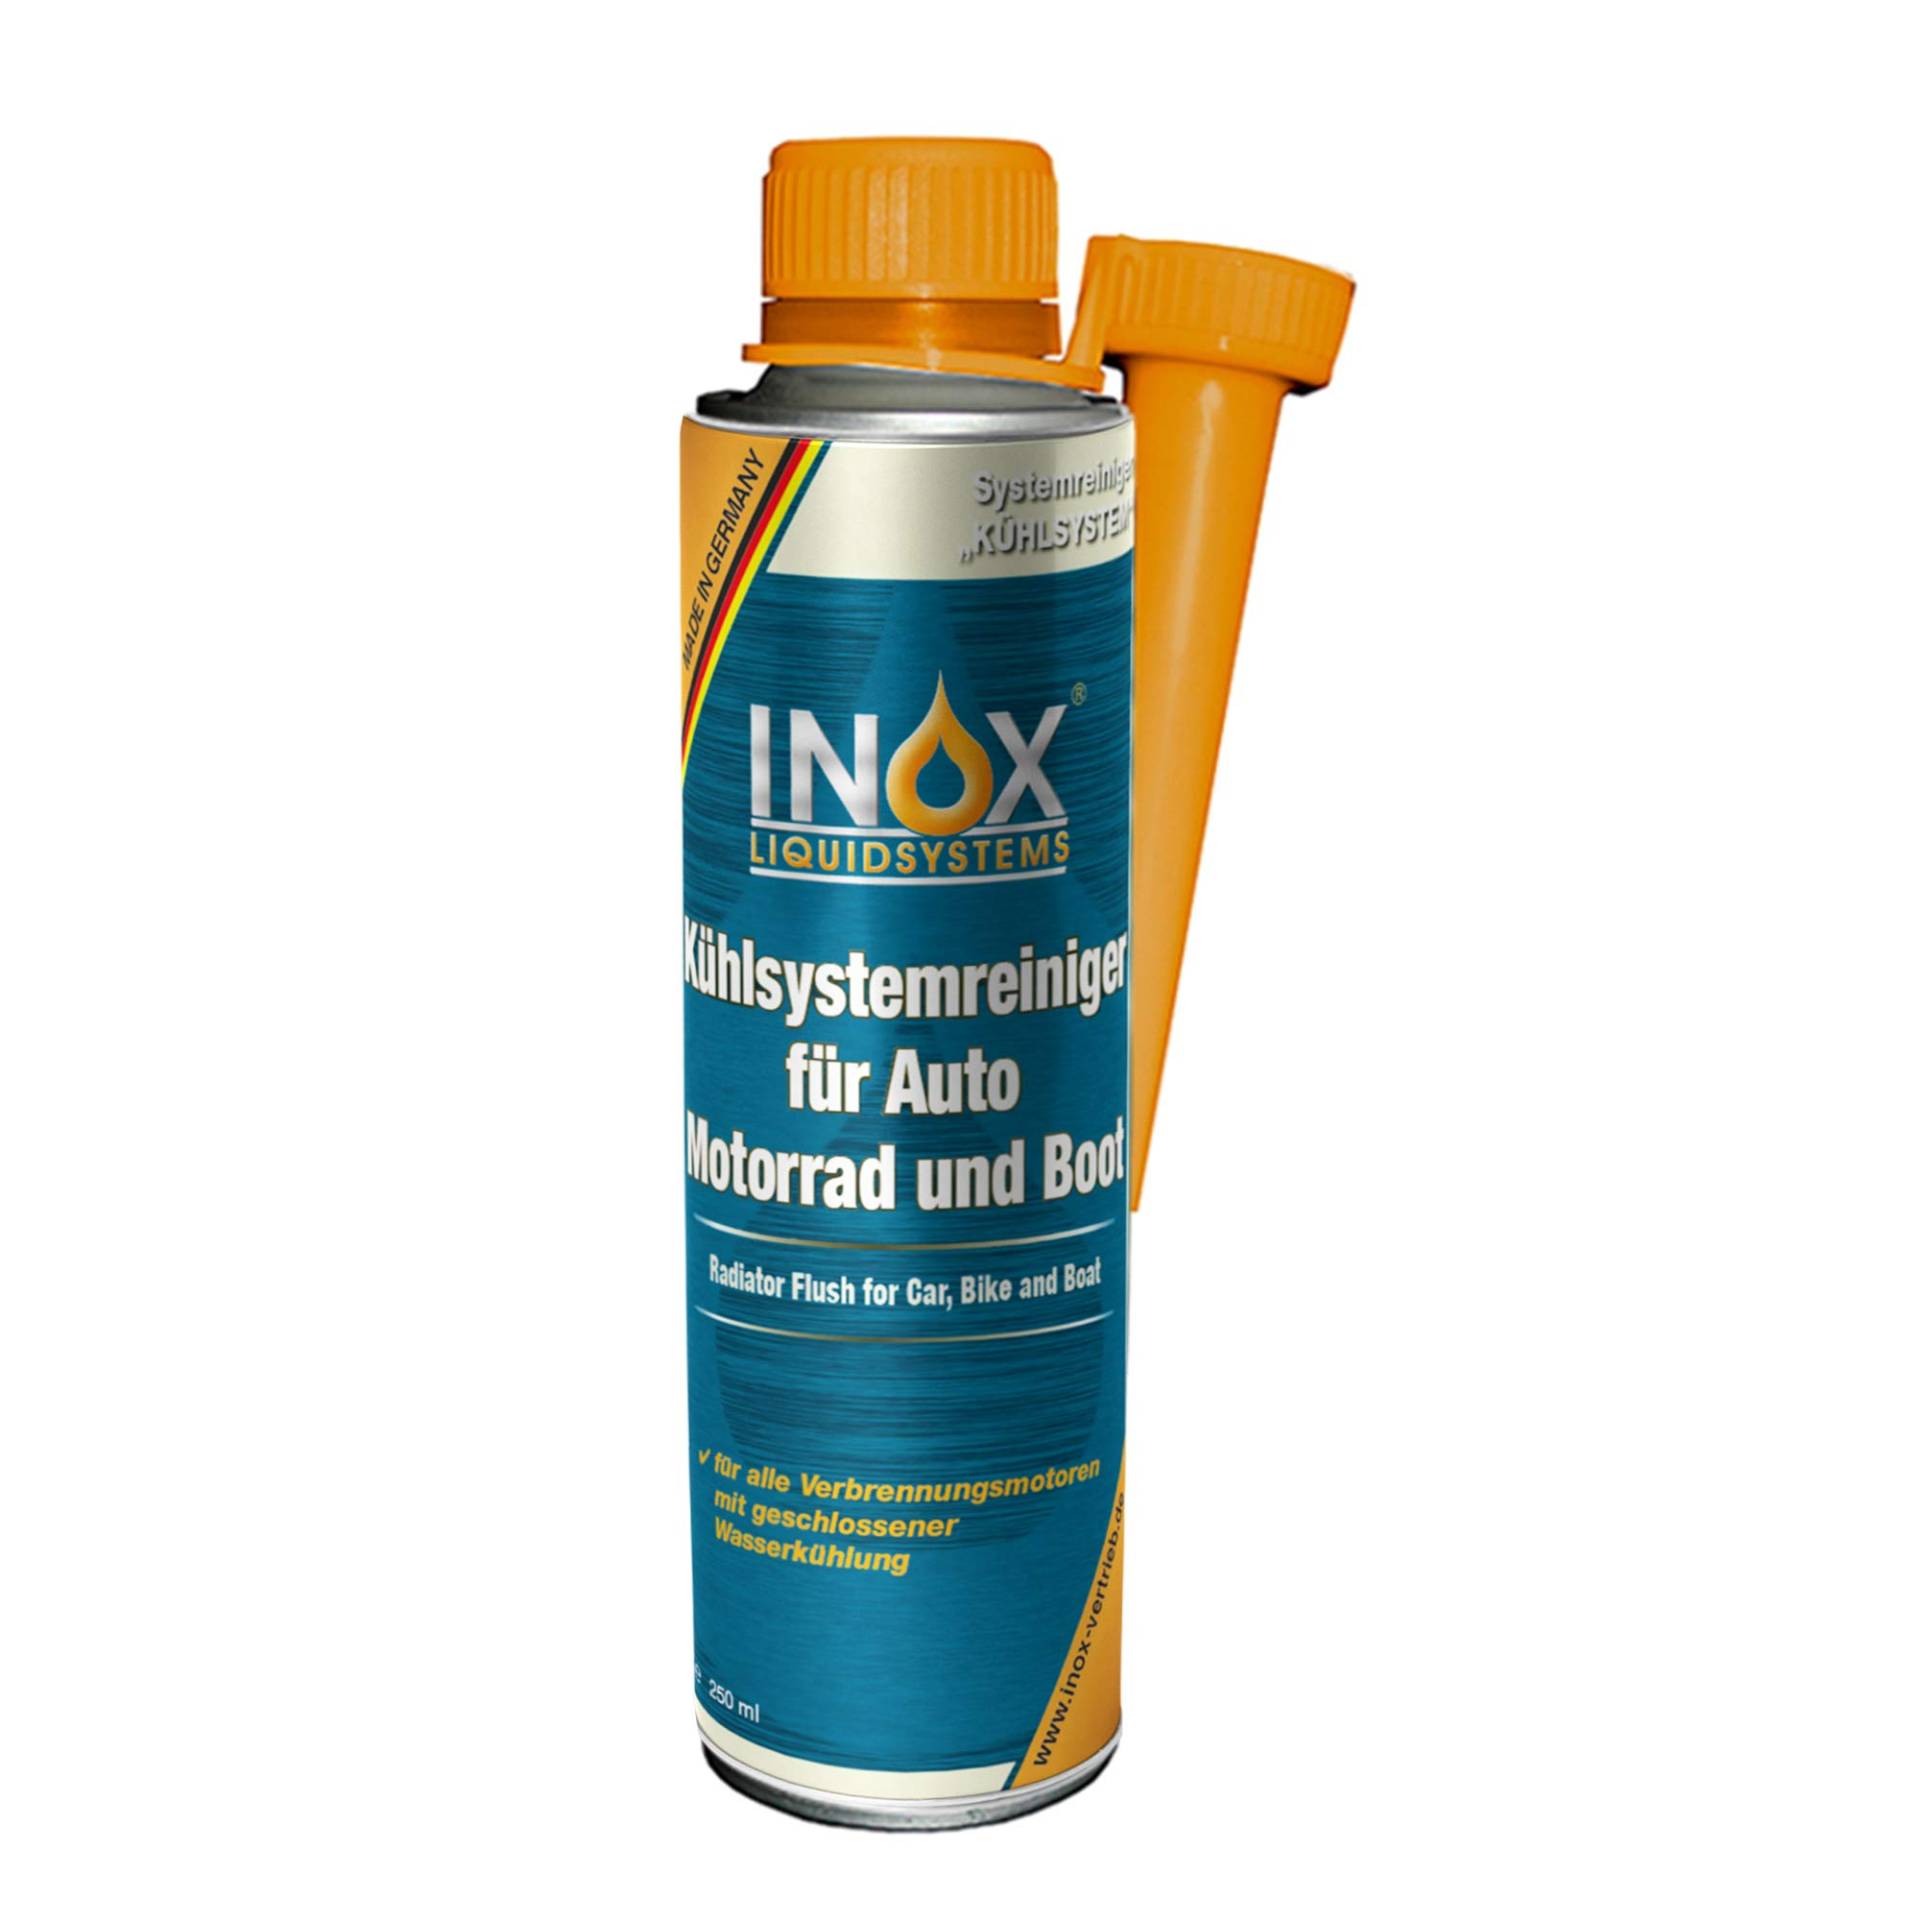 INOX® Kühlsystemreiniger Additiv, 250 ml - Kühlerschutz für Auto, Motor und Boot von INOX-LIQUIDSYSTEMS